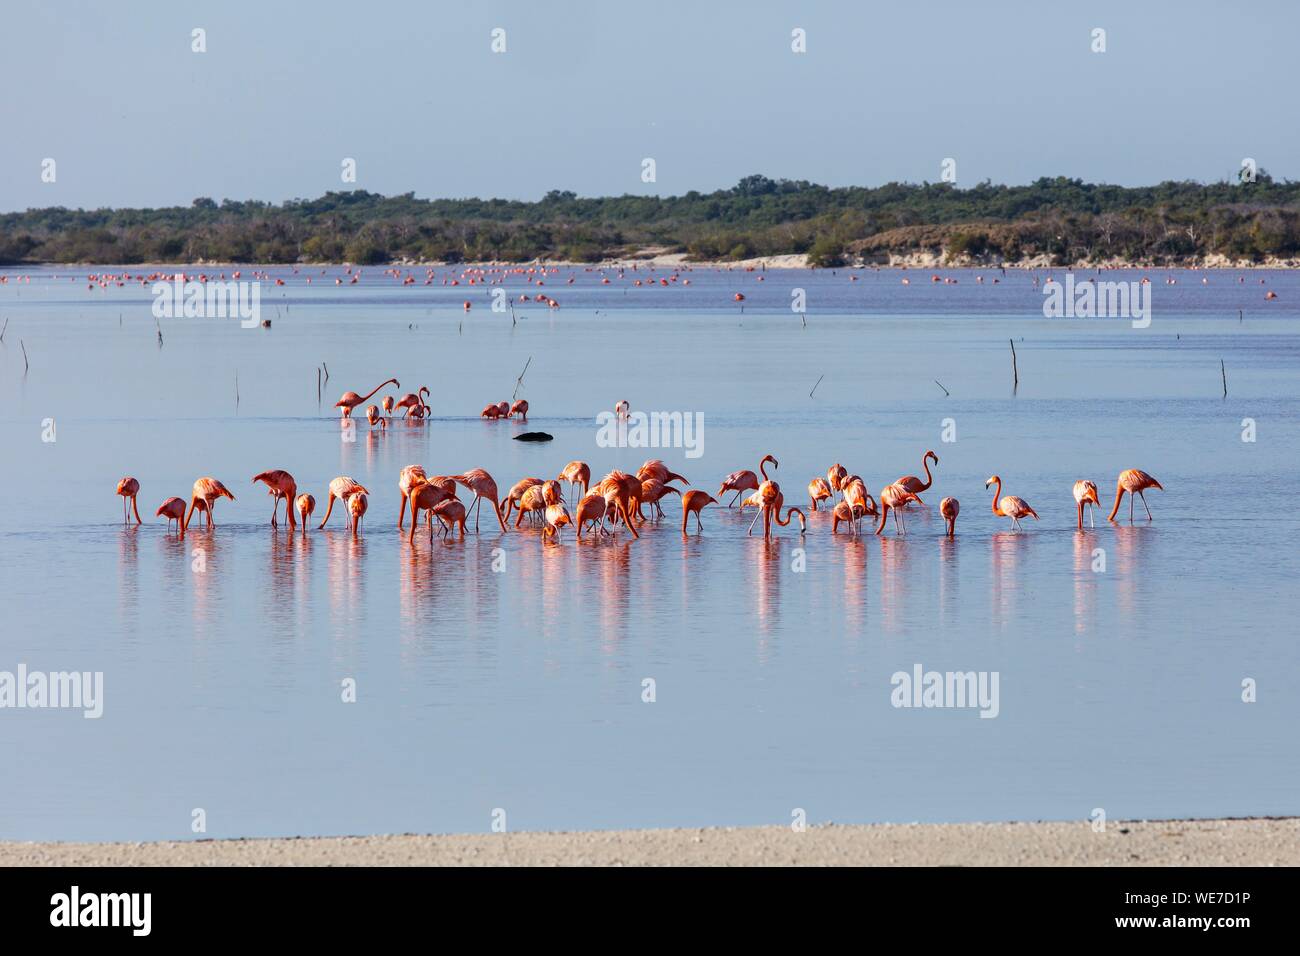 Messico, Yucatan Stato, Celestun, American flamingo (Phoenicopterus ruber) Foto Stock